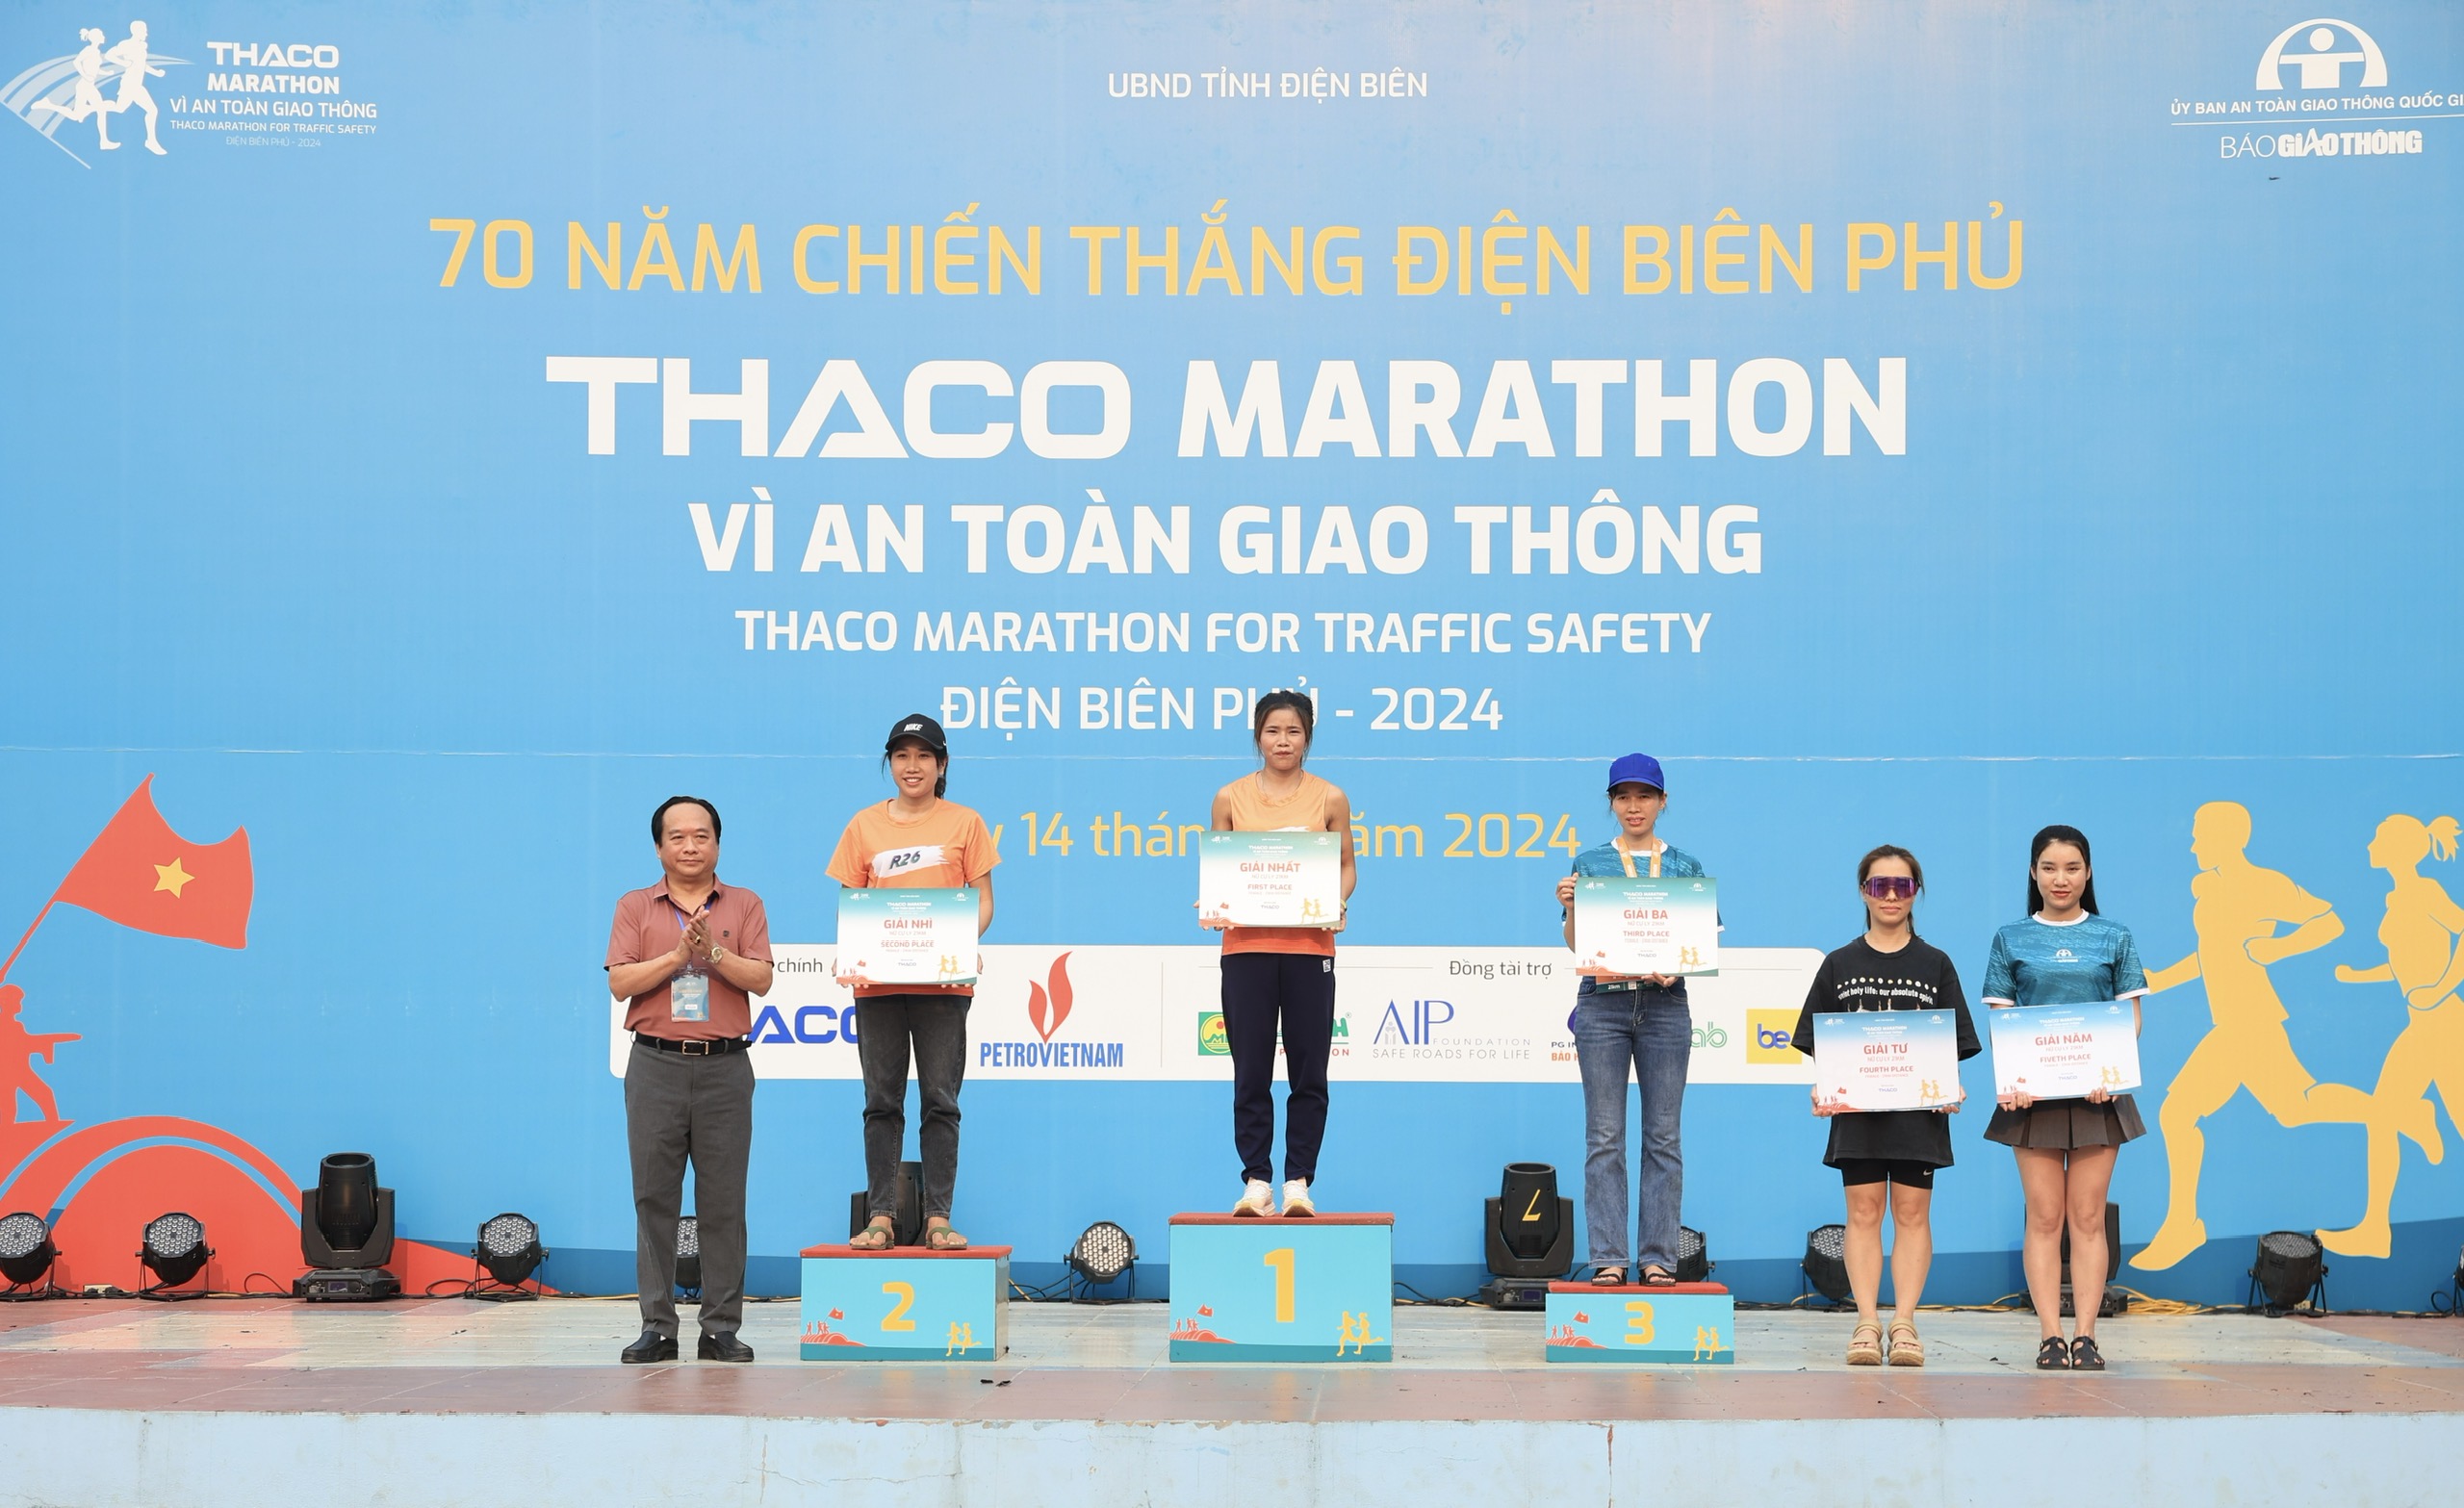 Trực tiếp: Giải THACO Marathon vì ATGT - Điện Biên Phủ 2024 thành công rực rỡ- Ảnh 8.